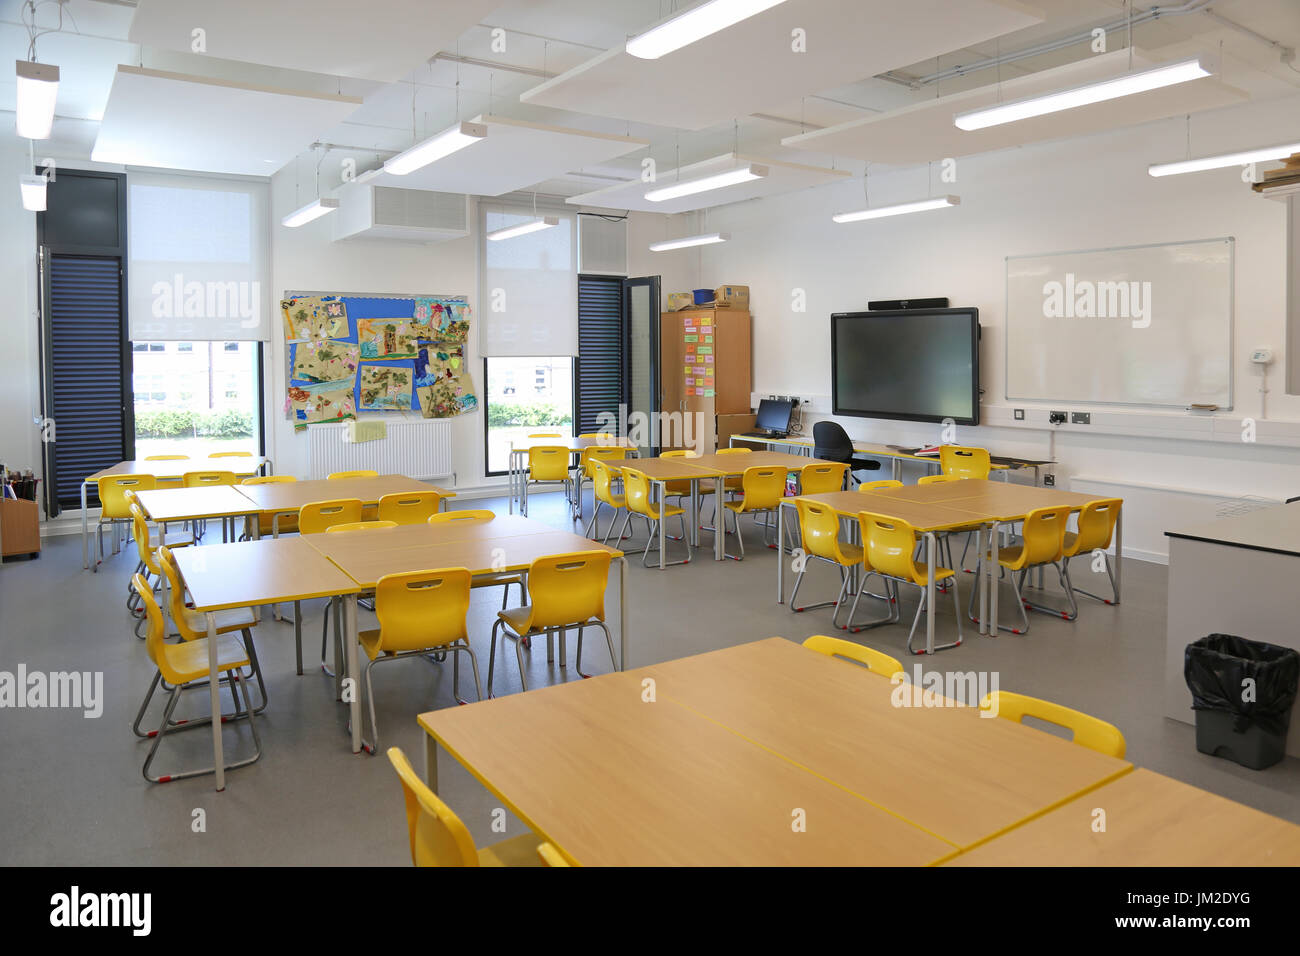 Innenraum eines Klassenzimmers in einer neu errichteten Grundschule im Osten Londons, Großbritannien. Zeigt Schreibtische, Stühle und großen TV-Bildschirm.leer, keine Schüler. Stockfoto